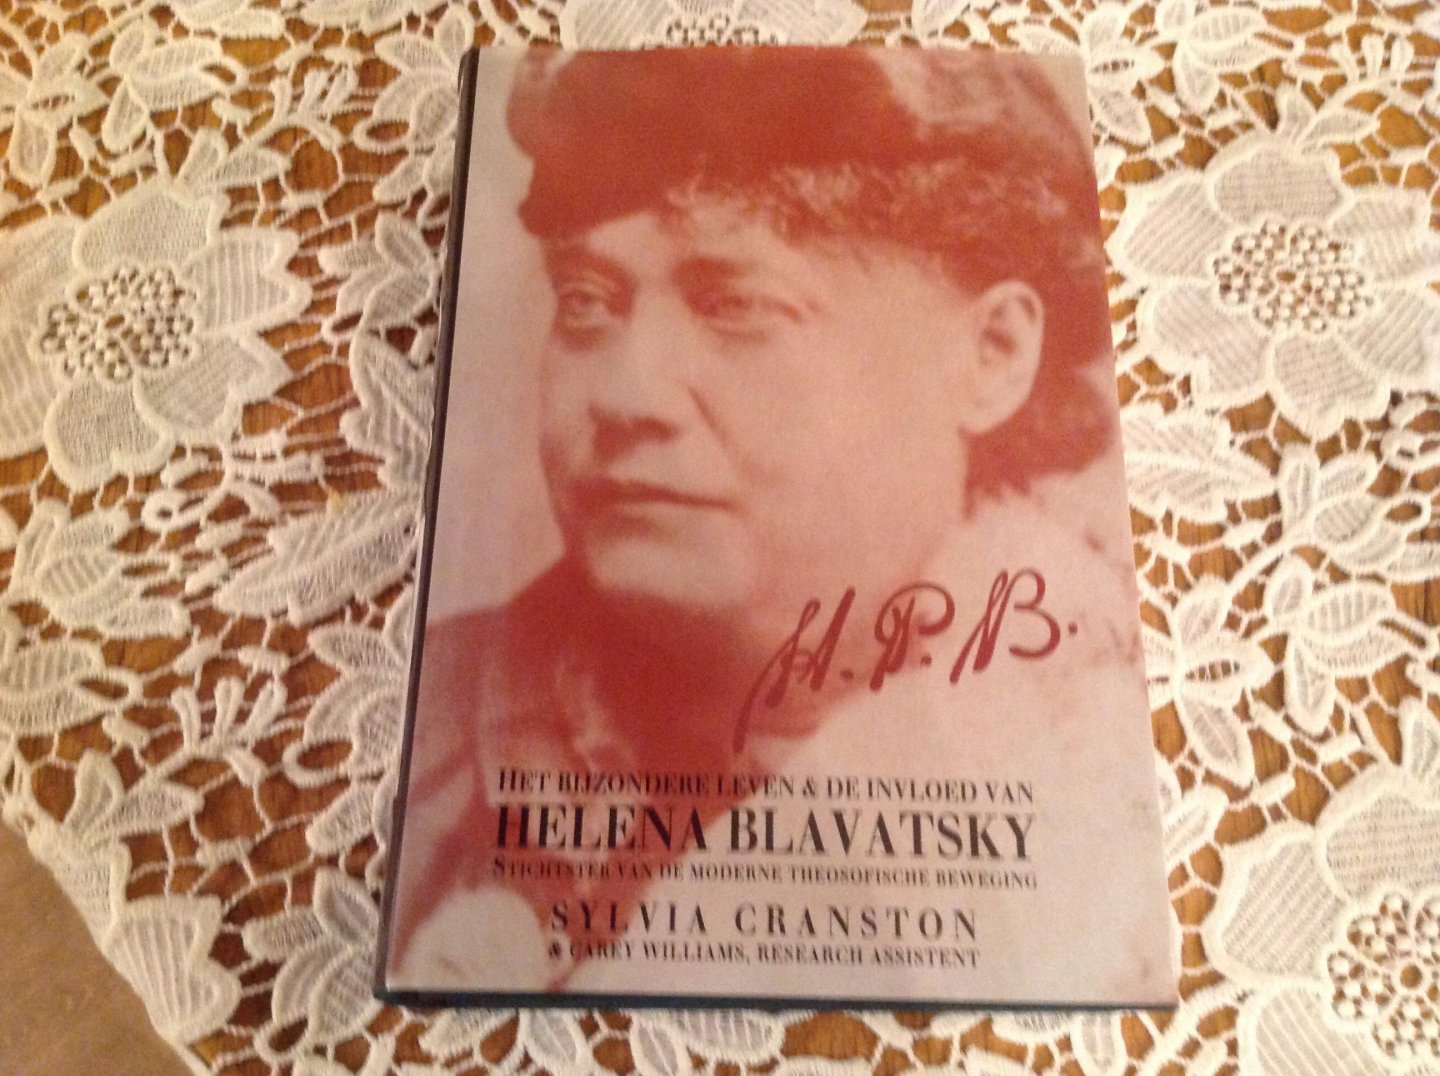 Cranston, S., Williams, C. - H P B (Helena Blavatsky) / het bijzondere leven en de invloed van Helena Blavatsky stichtster van de moderne Theosofische Beweging